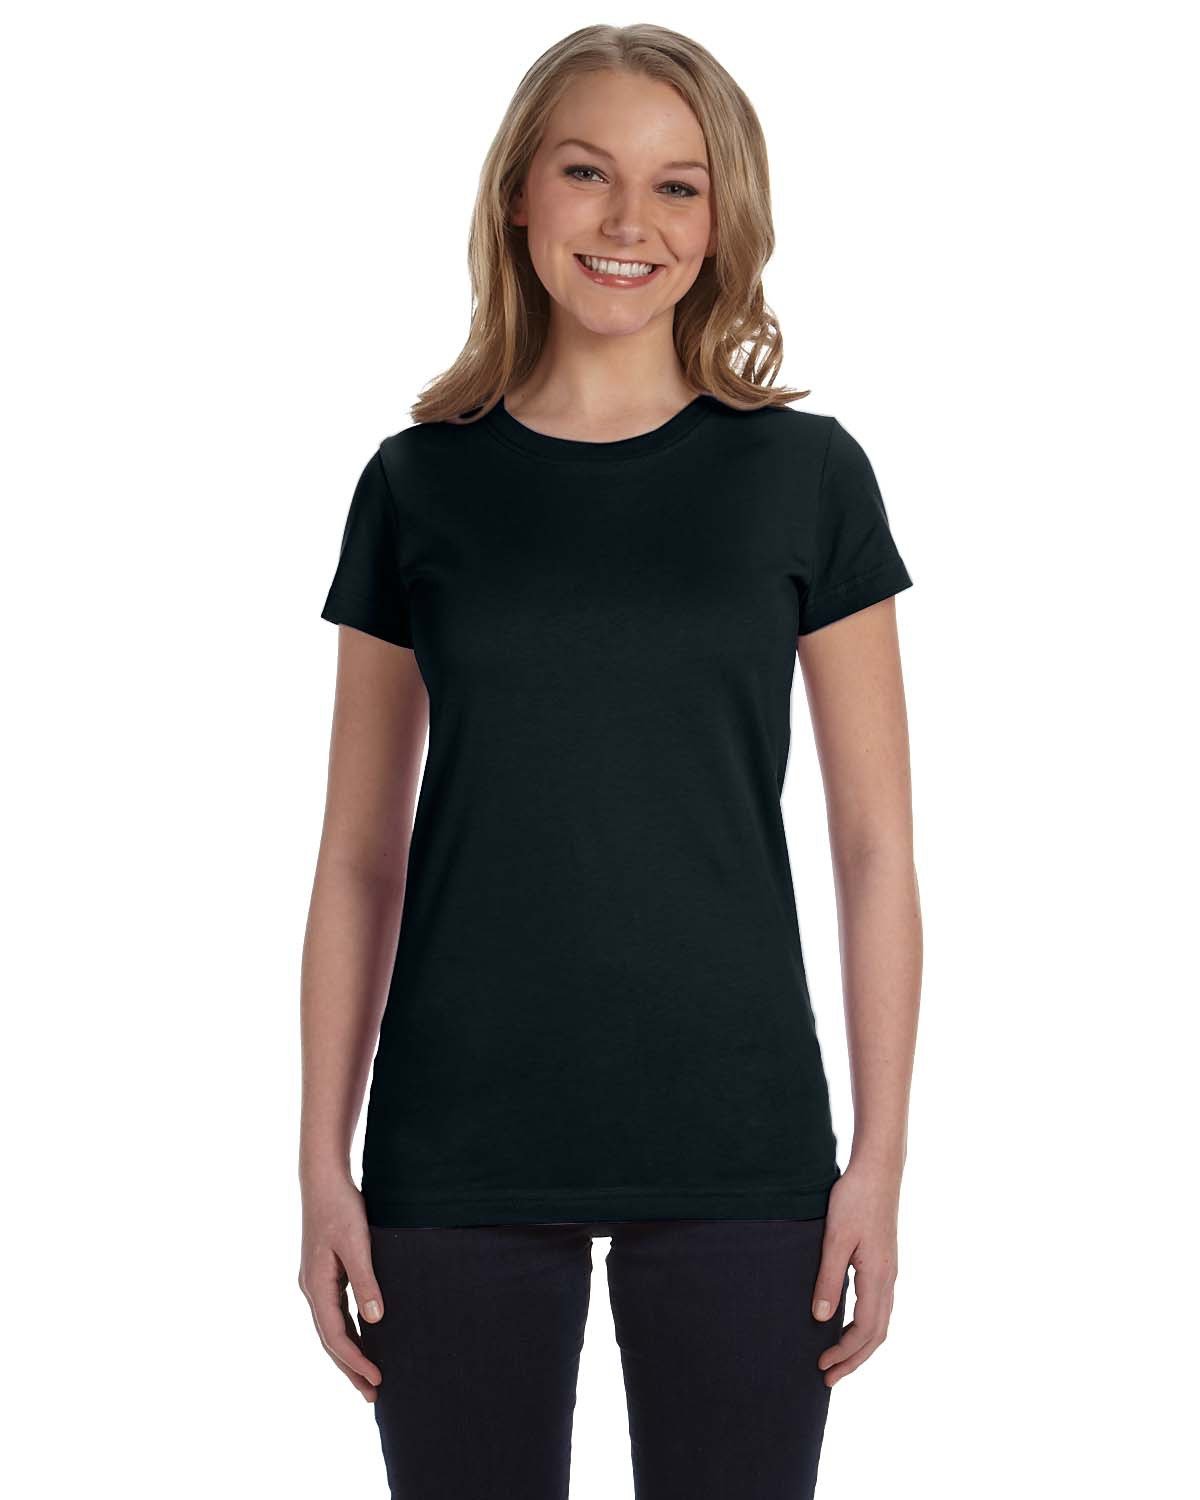 LAT Ladies' Junior Fit T-Shirt black 